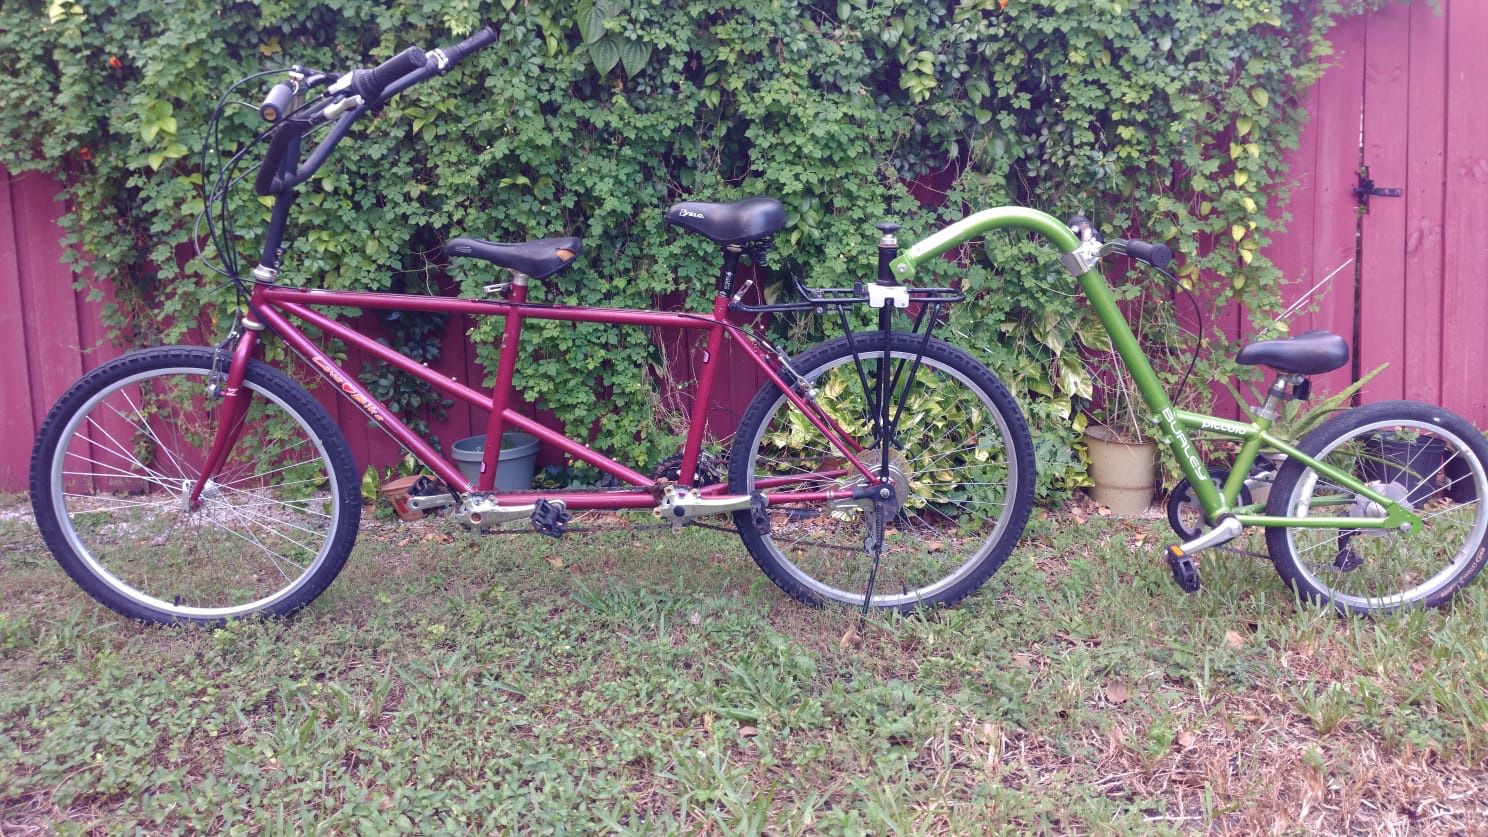 Family Bike / The Buddy Bike